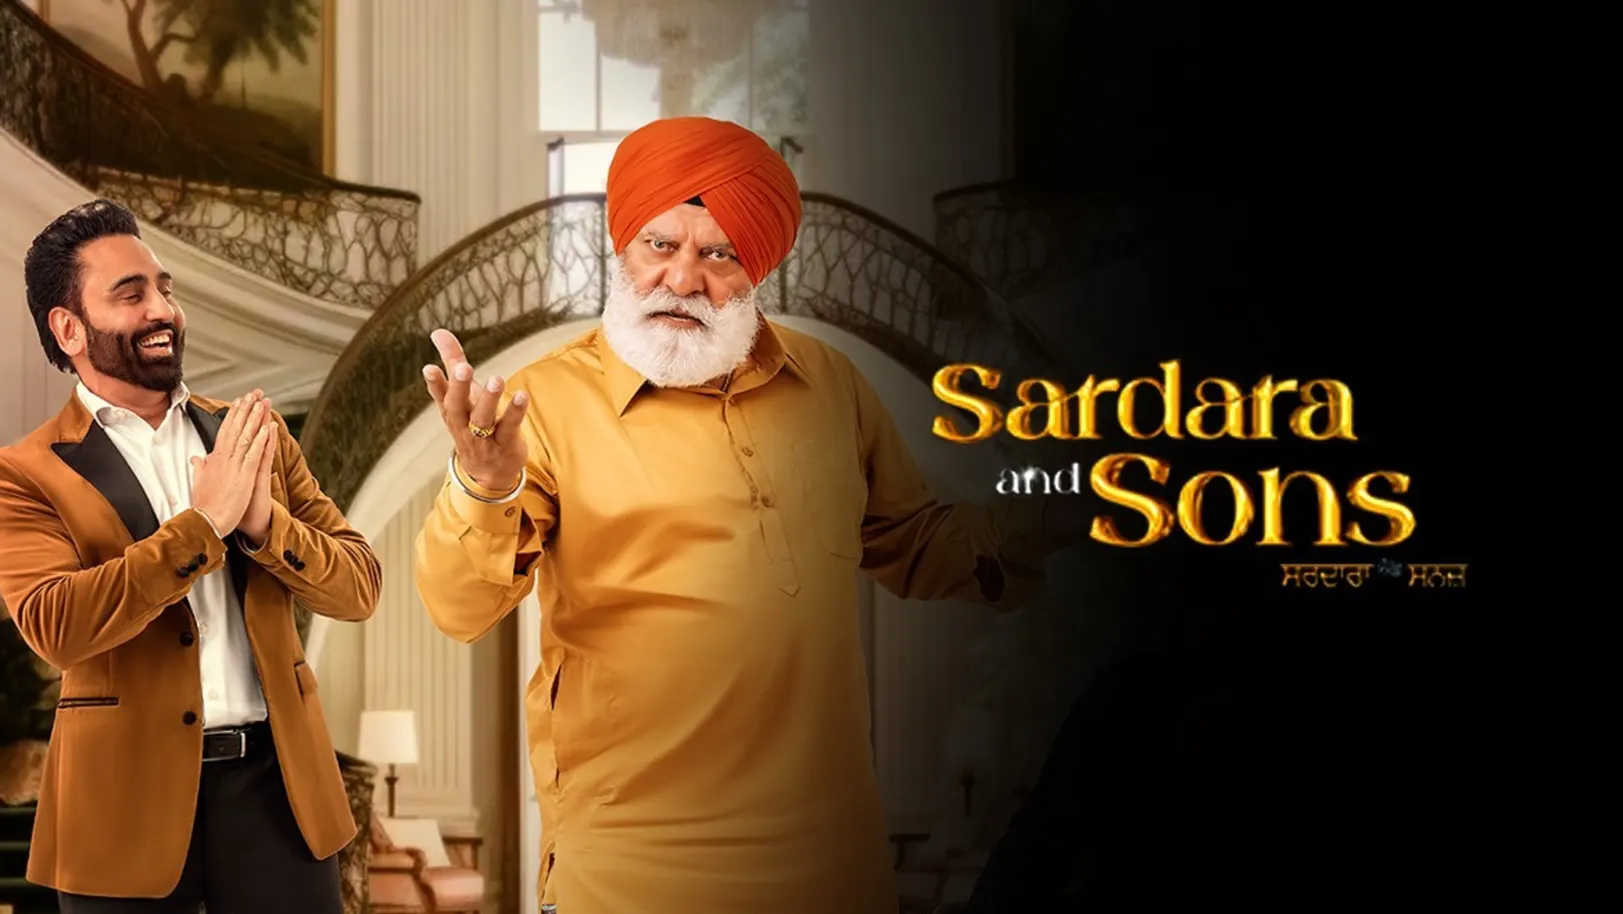 Sardara and sons Movie